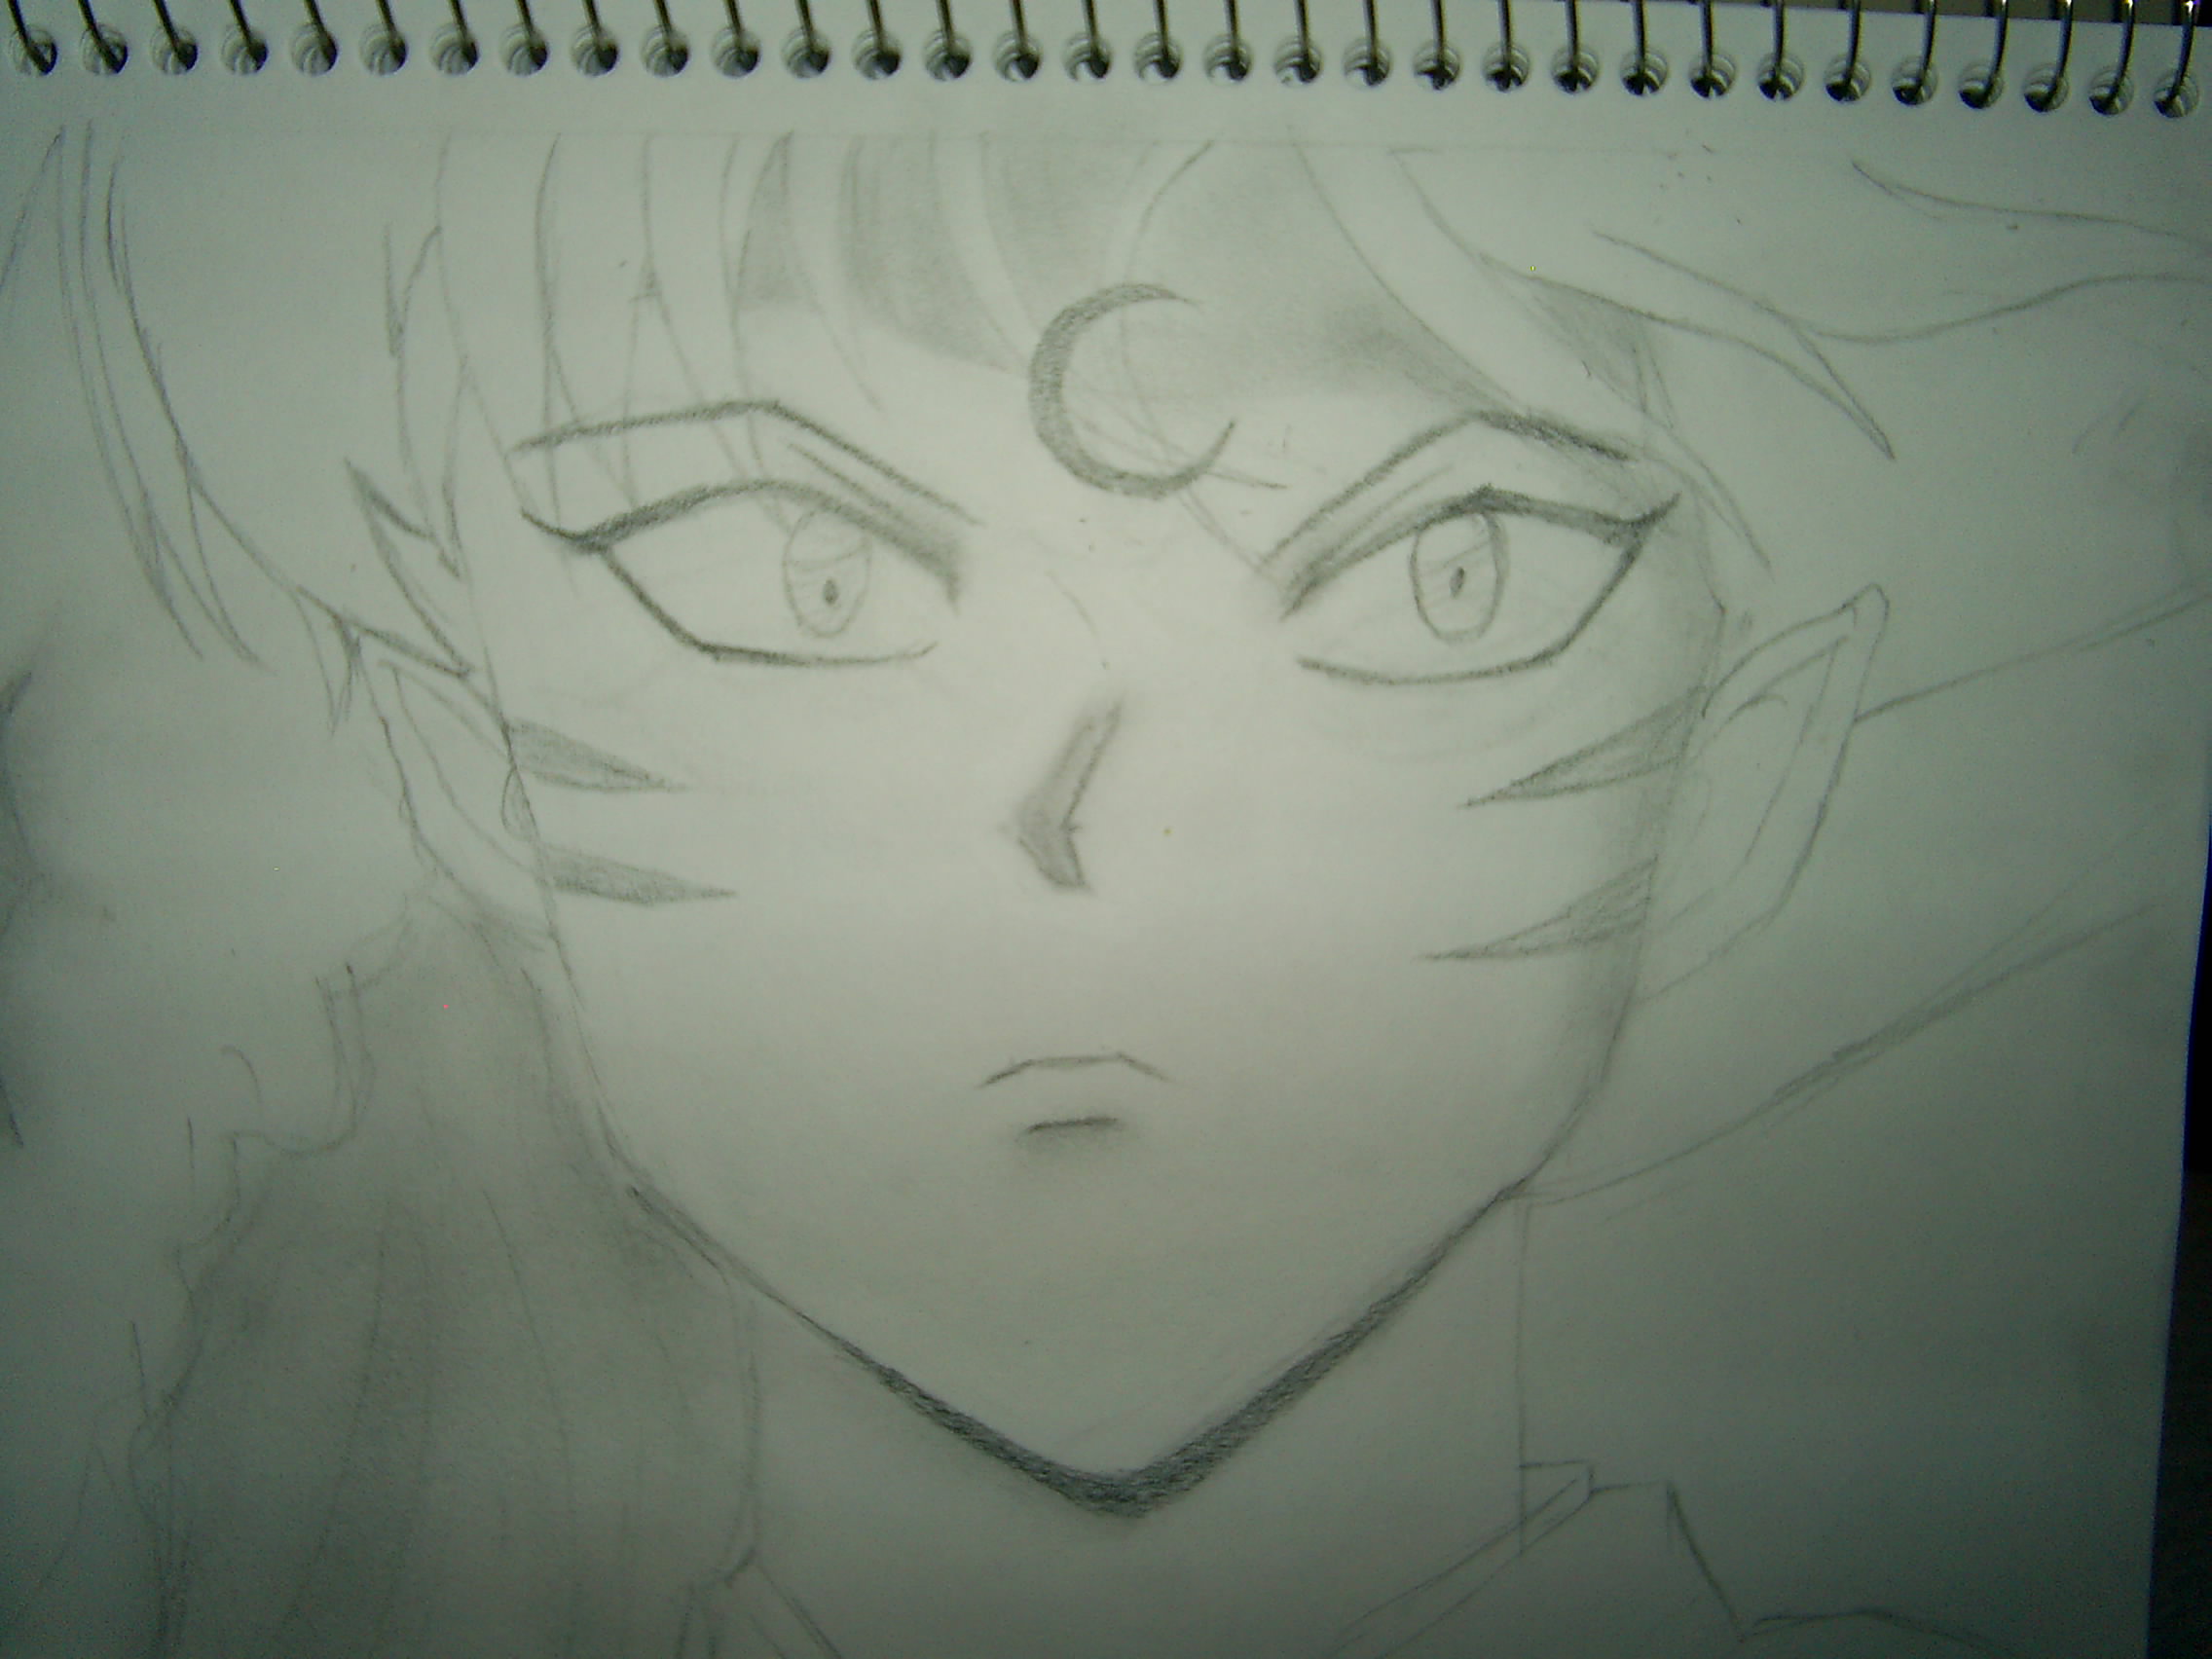 Sesshoumaru Sketch by DB_Diana_Jack_8